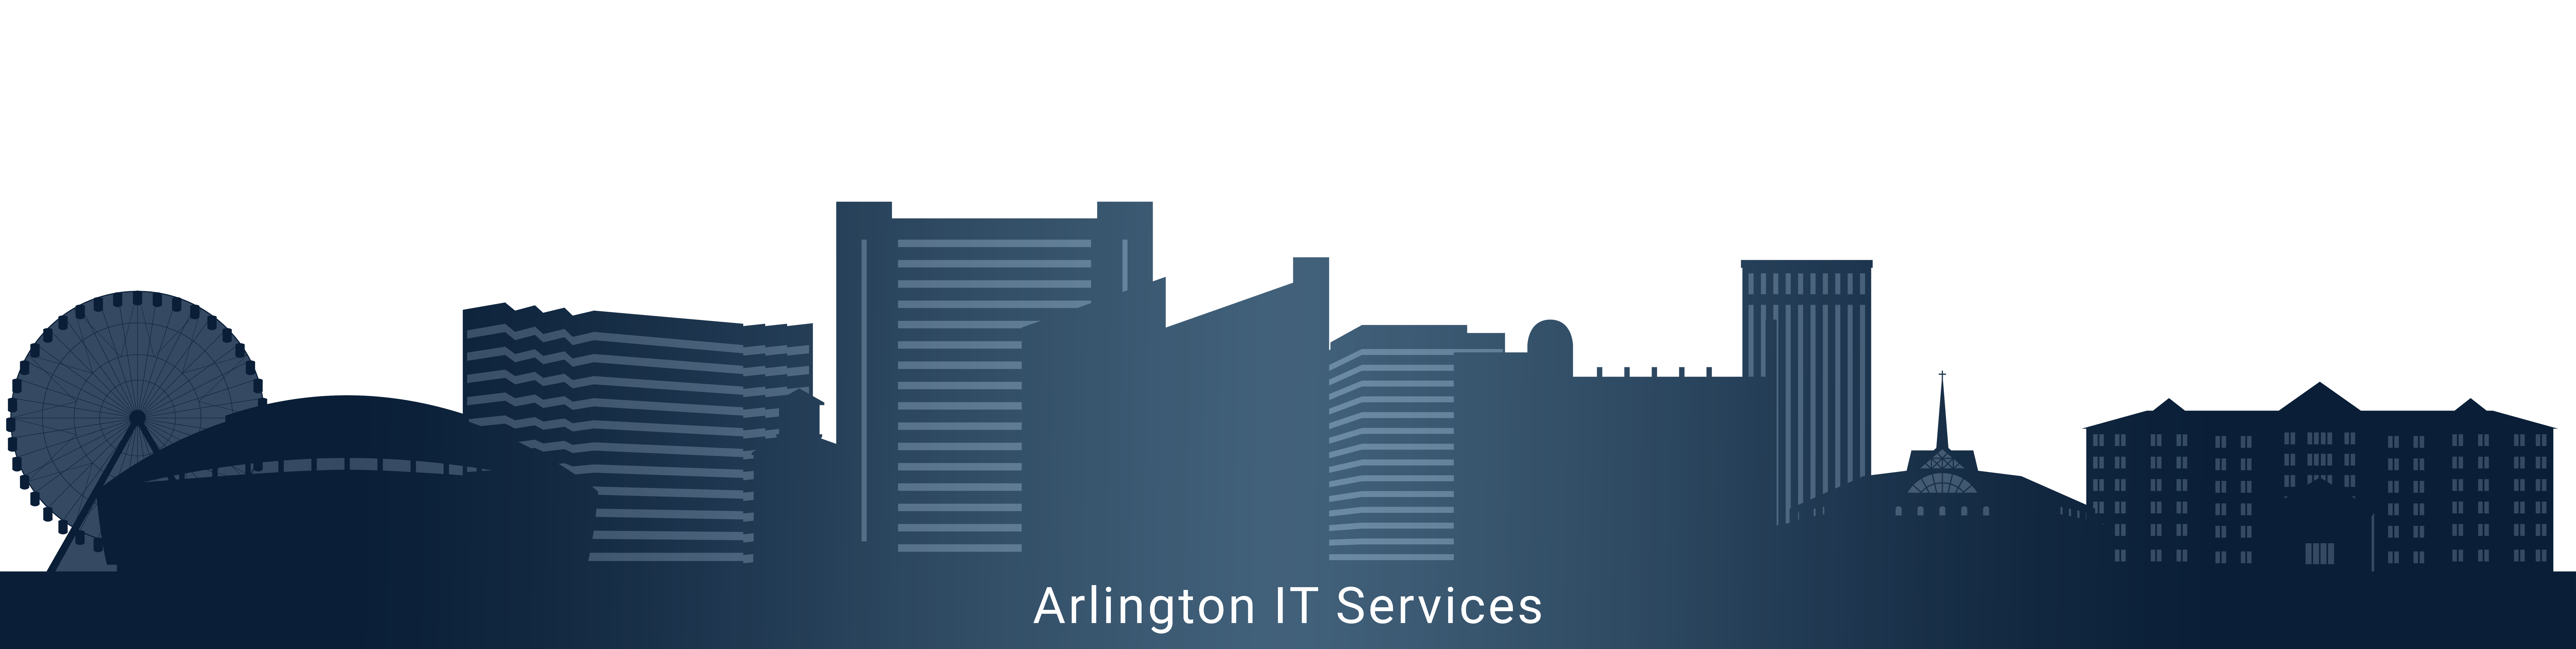 IT Services Arlington